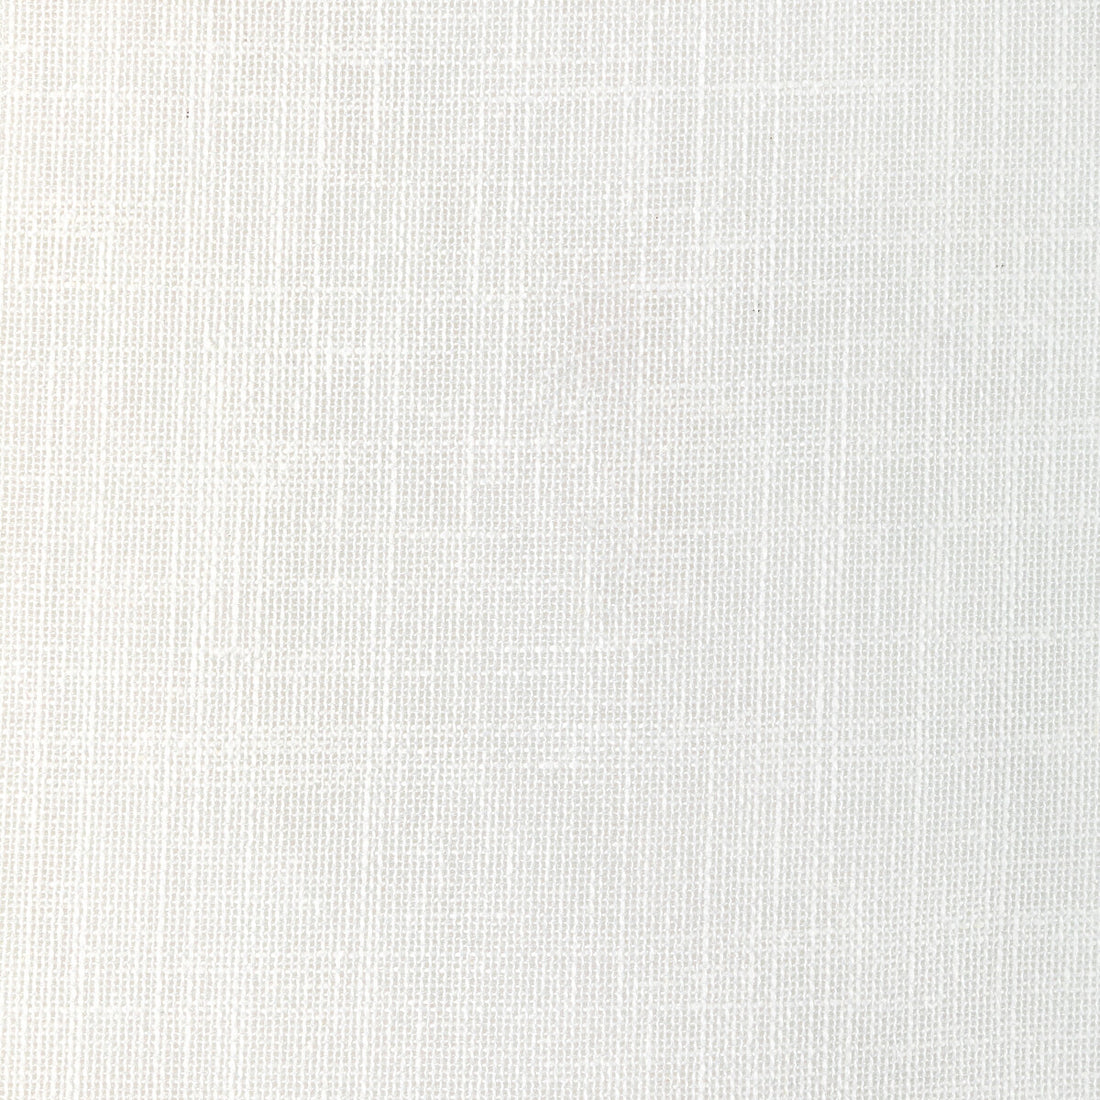 Kravet Basics fabric in 4931-1 color - pattern 4931.1.0 - by Kravet Basics